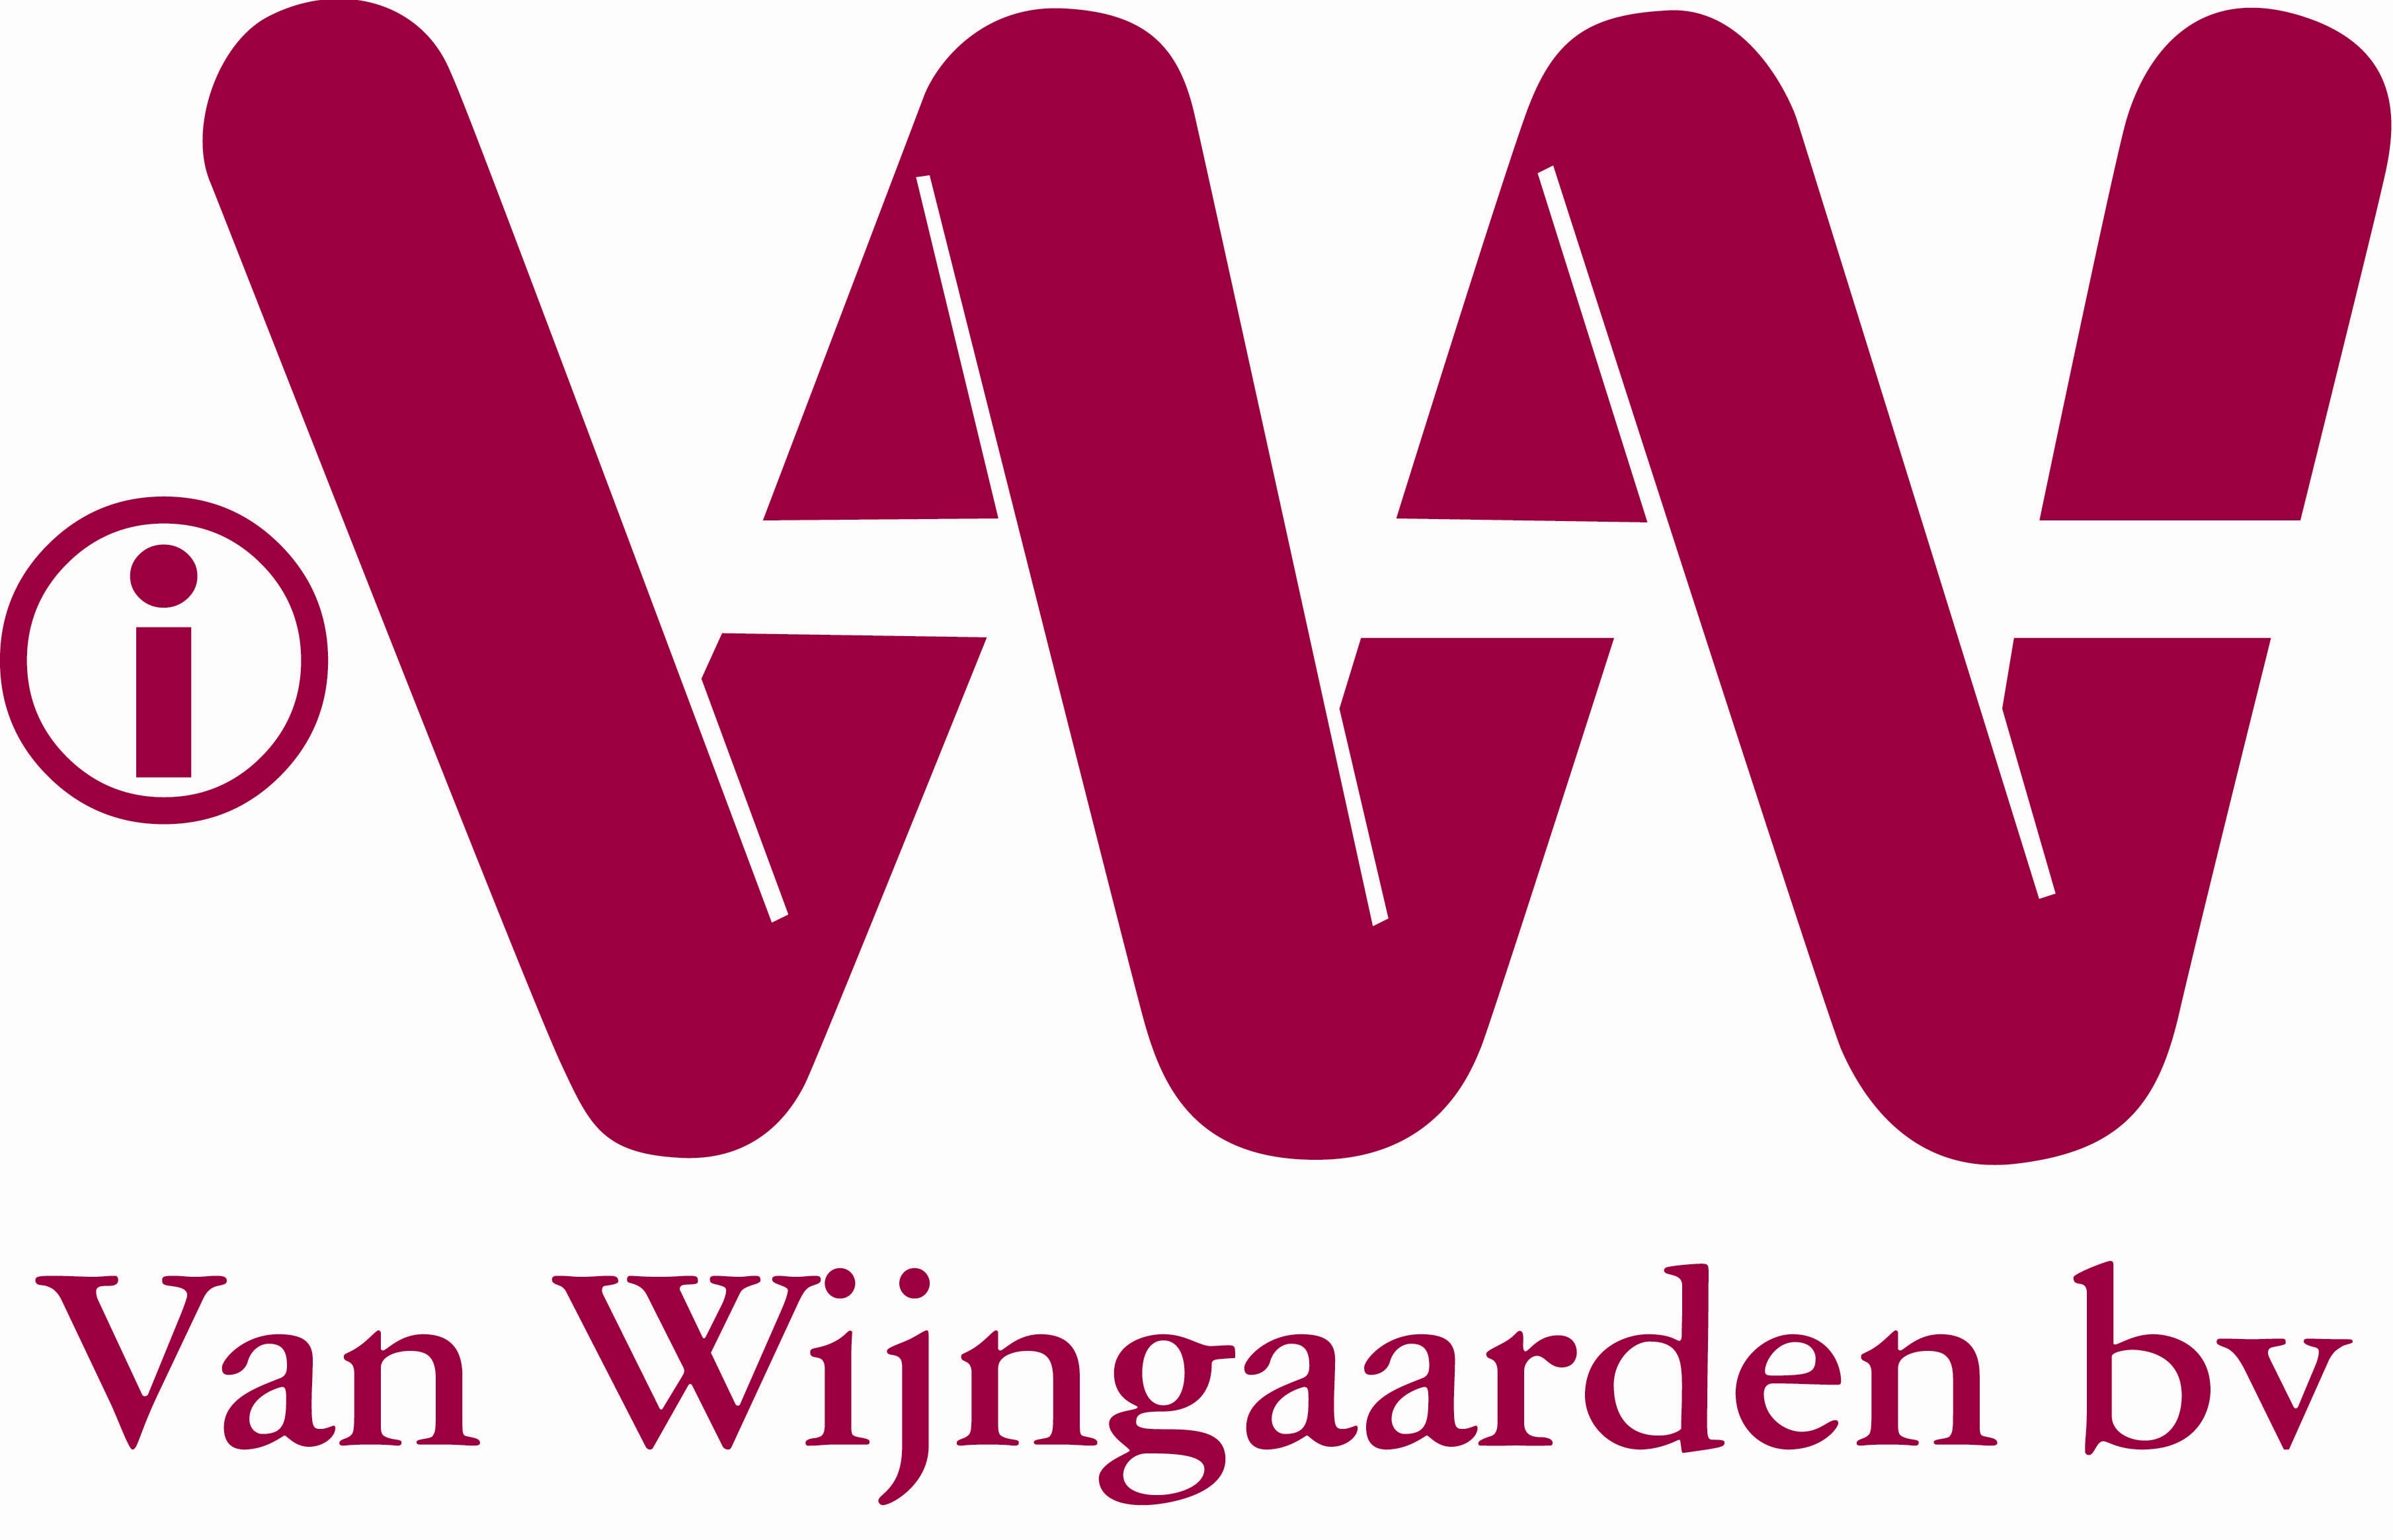 Van Wijngaarden logo